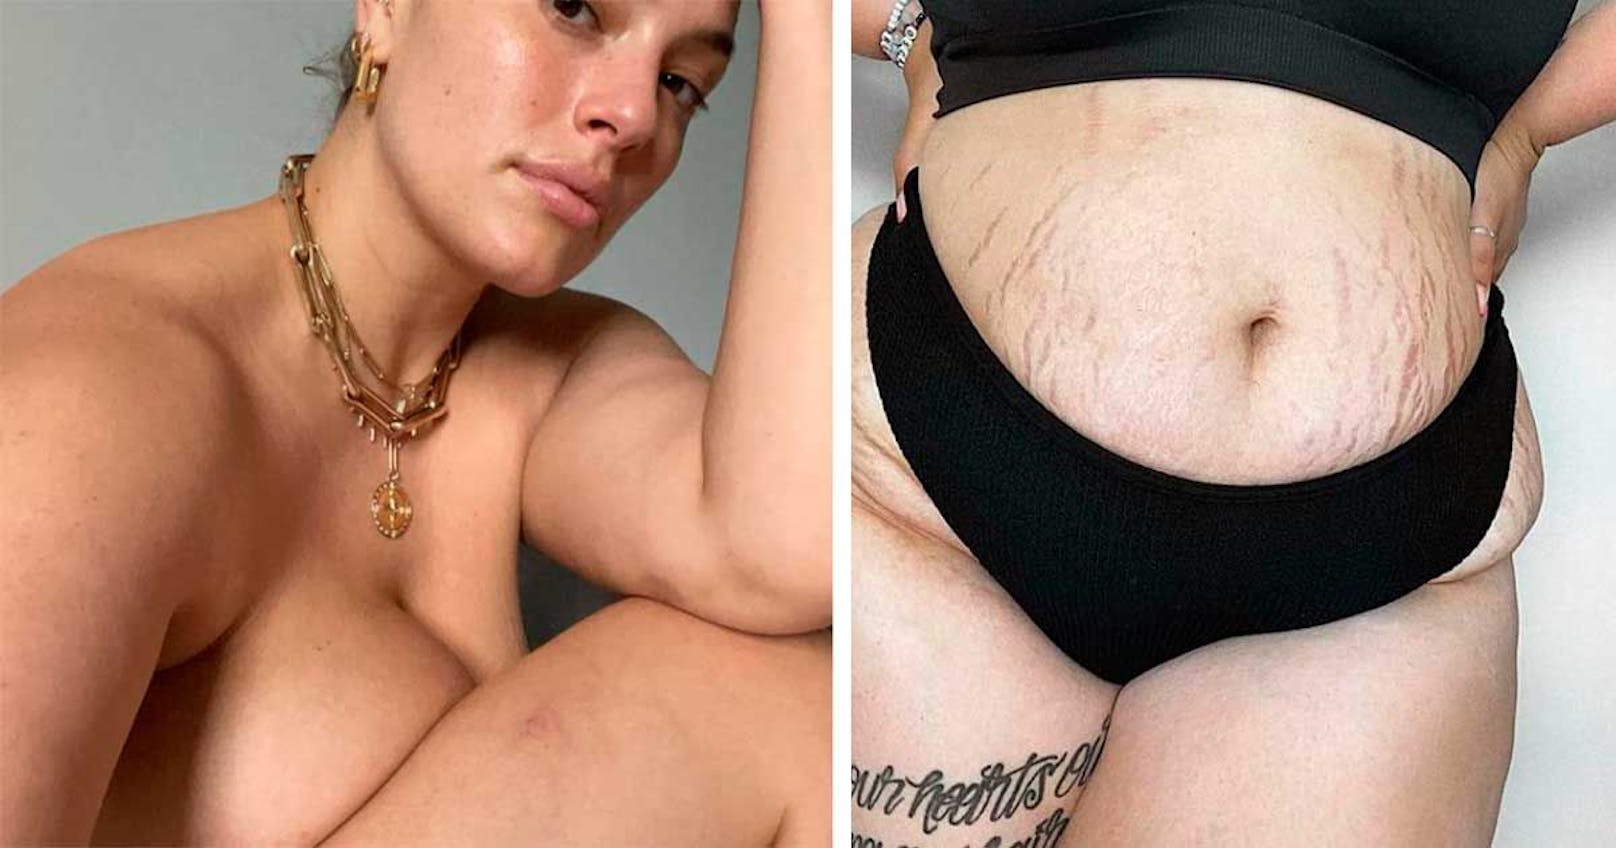 Jeder Körper ist schön! Das will Ashley Graham auch in einem neuen Instagram-Posting ihren Fans vermitteln.